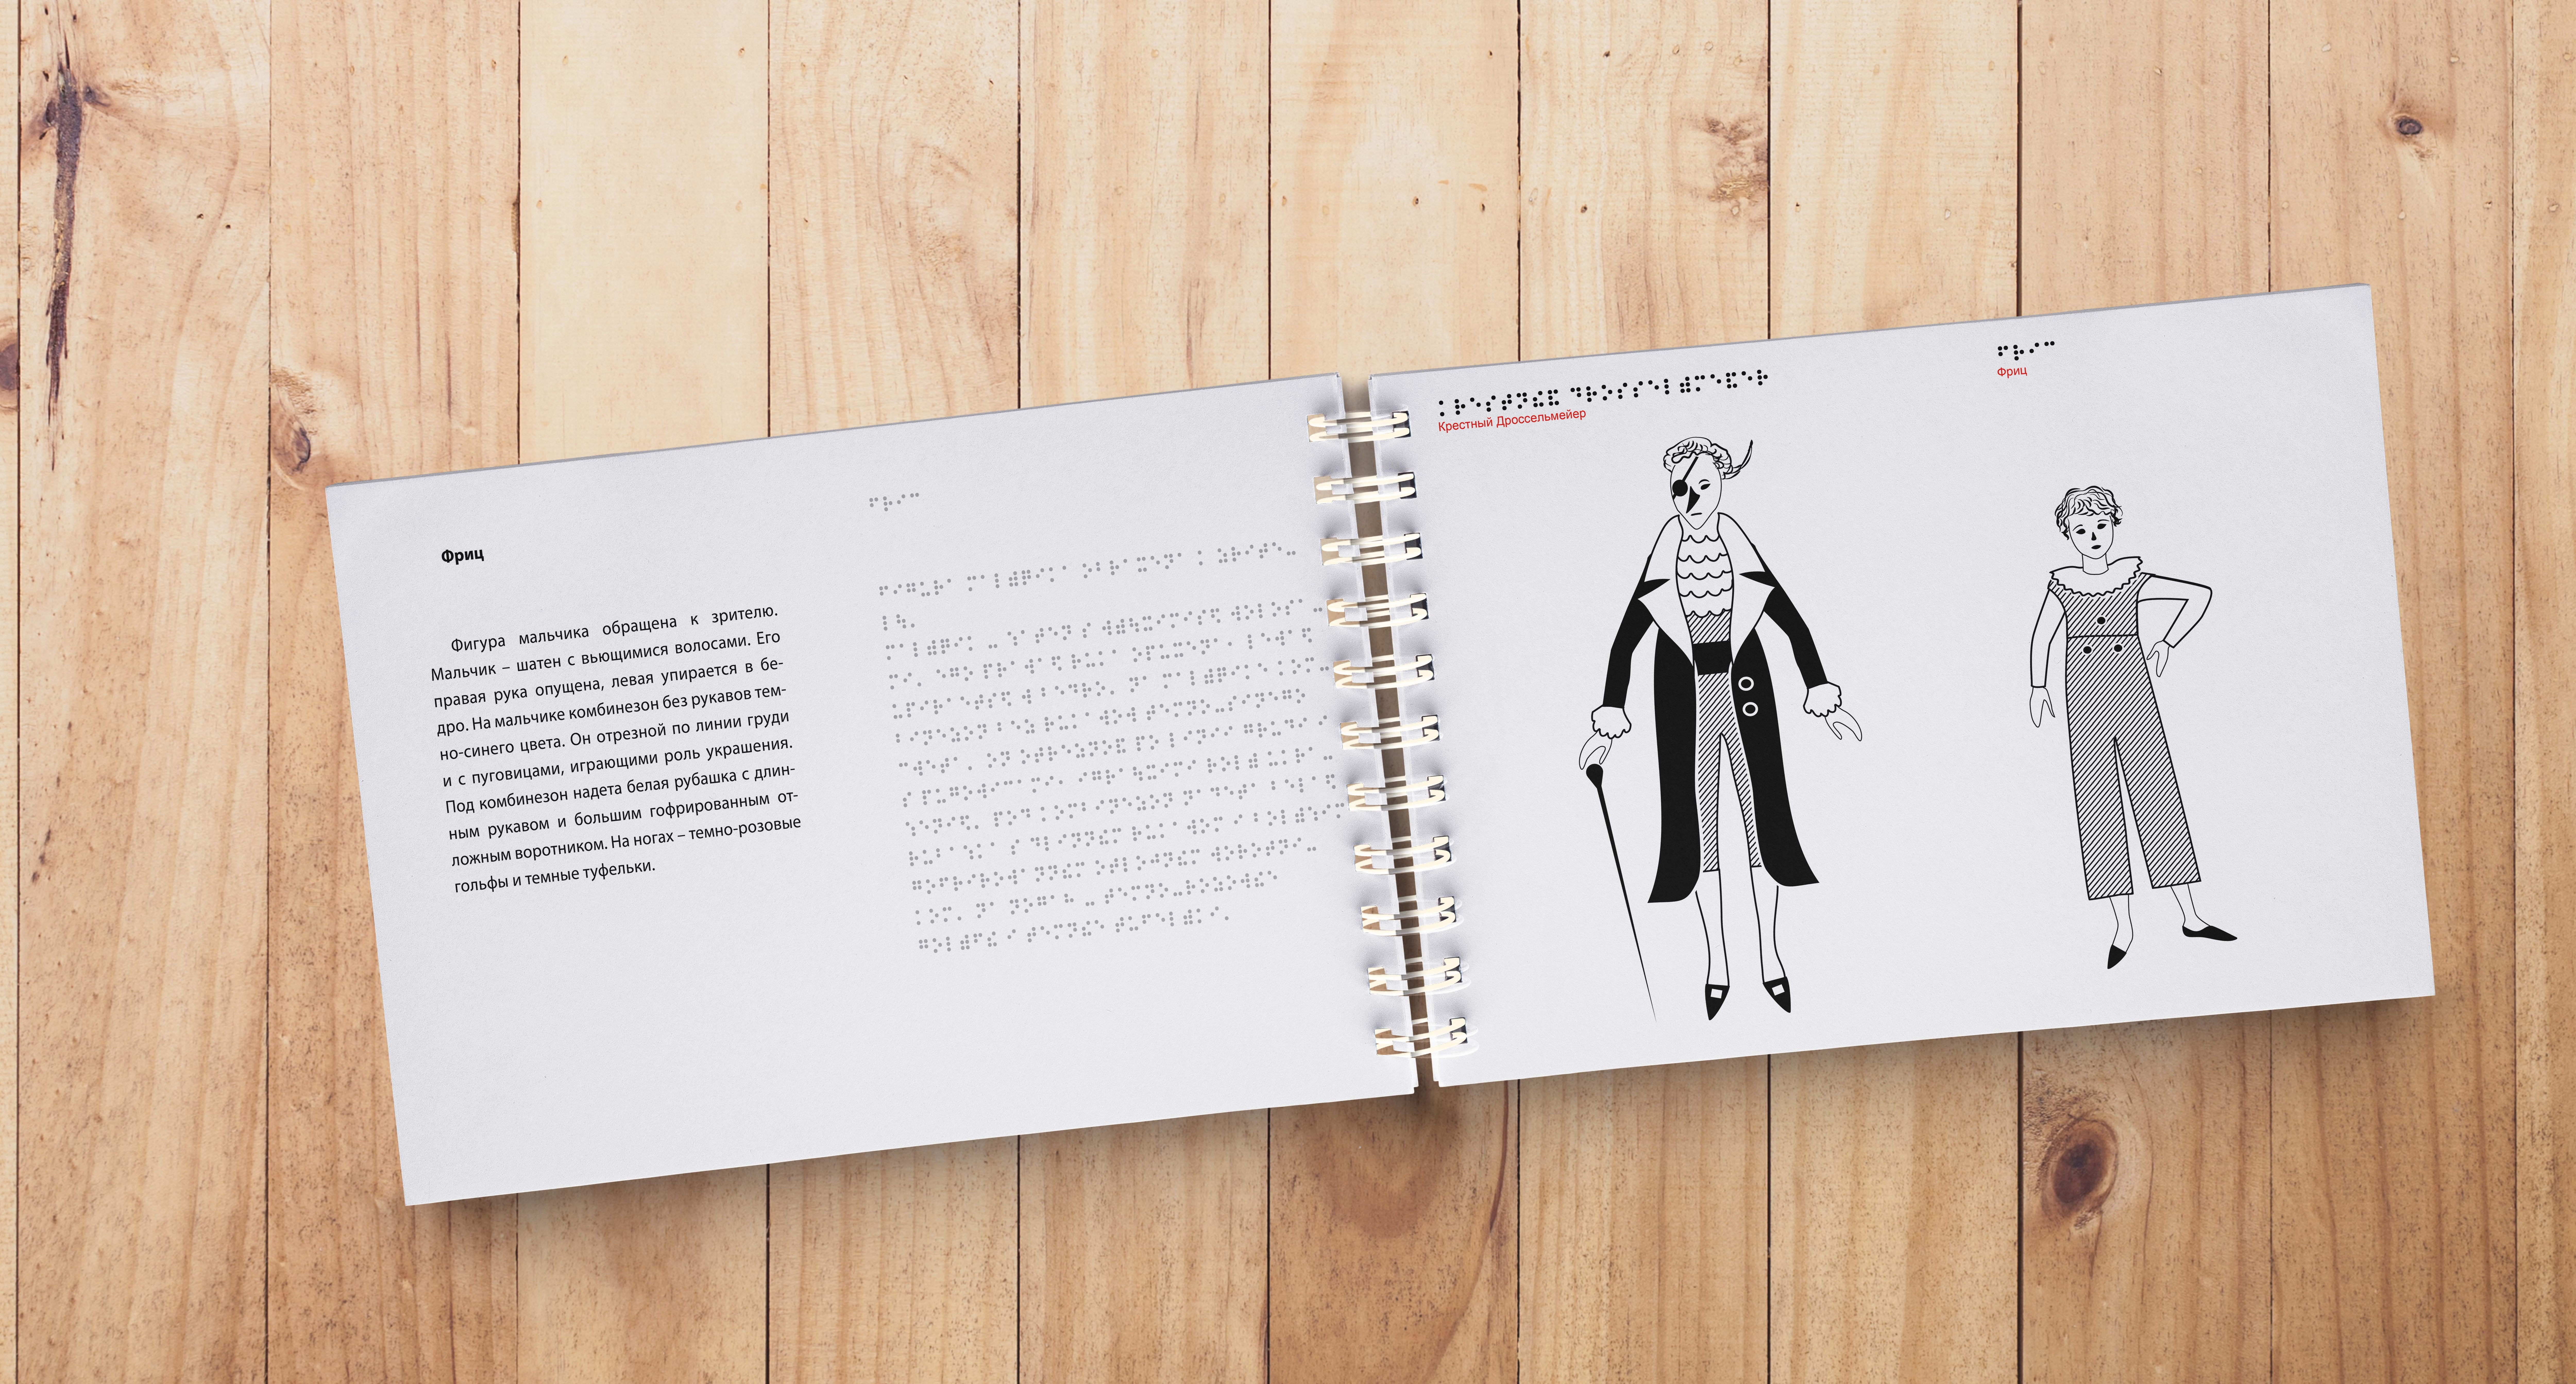 Горизонтальная фотография. В центральной части разворот книги с текстом и рельефными иллюстрациями героев балета.